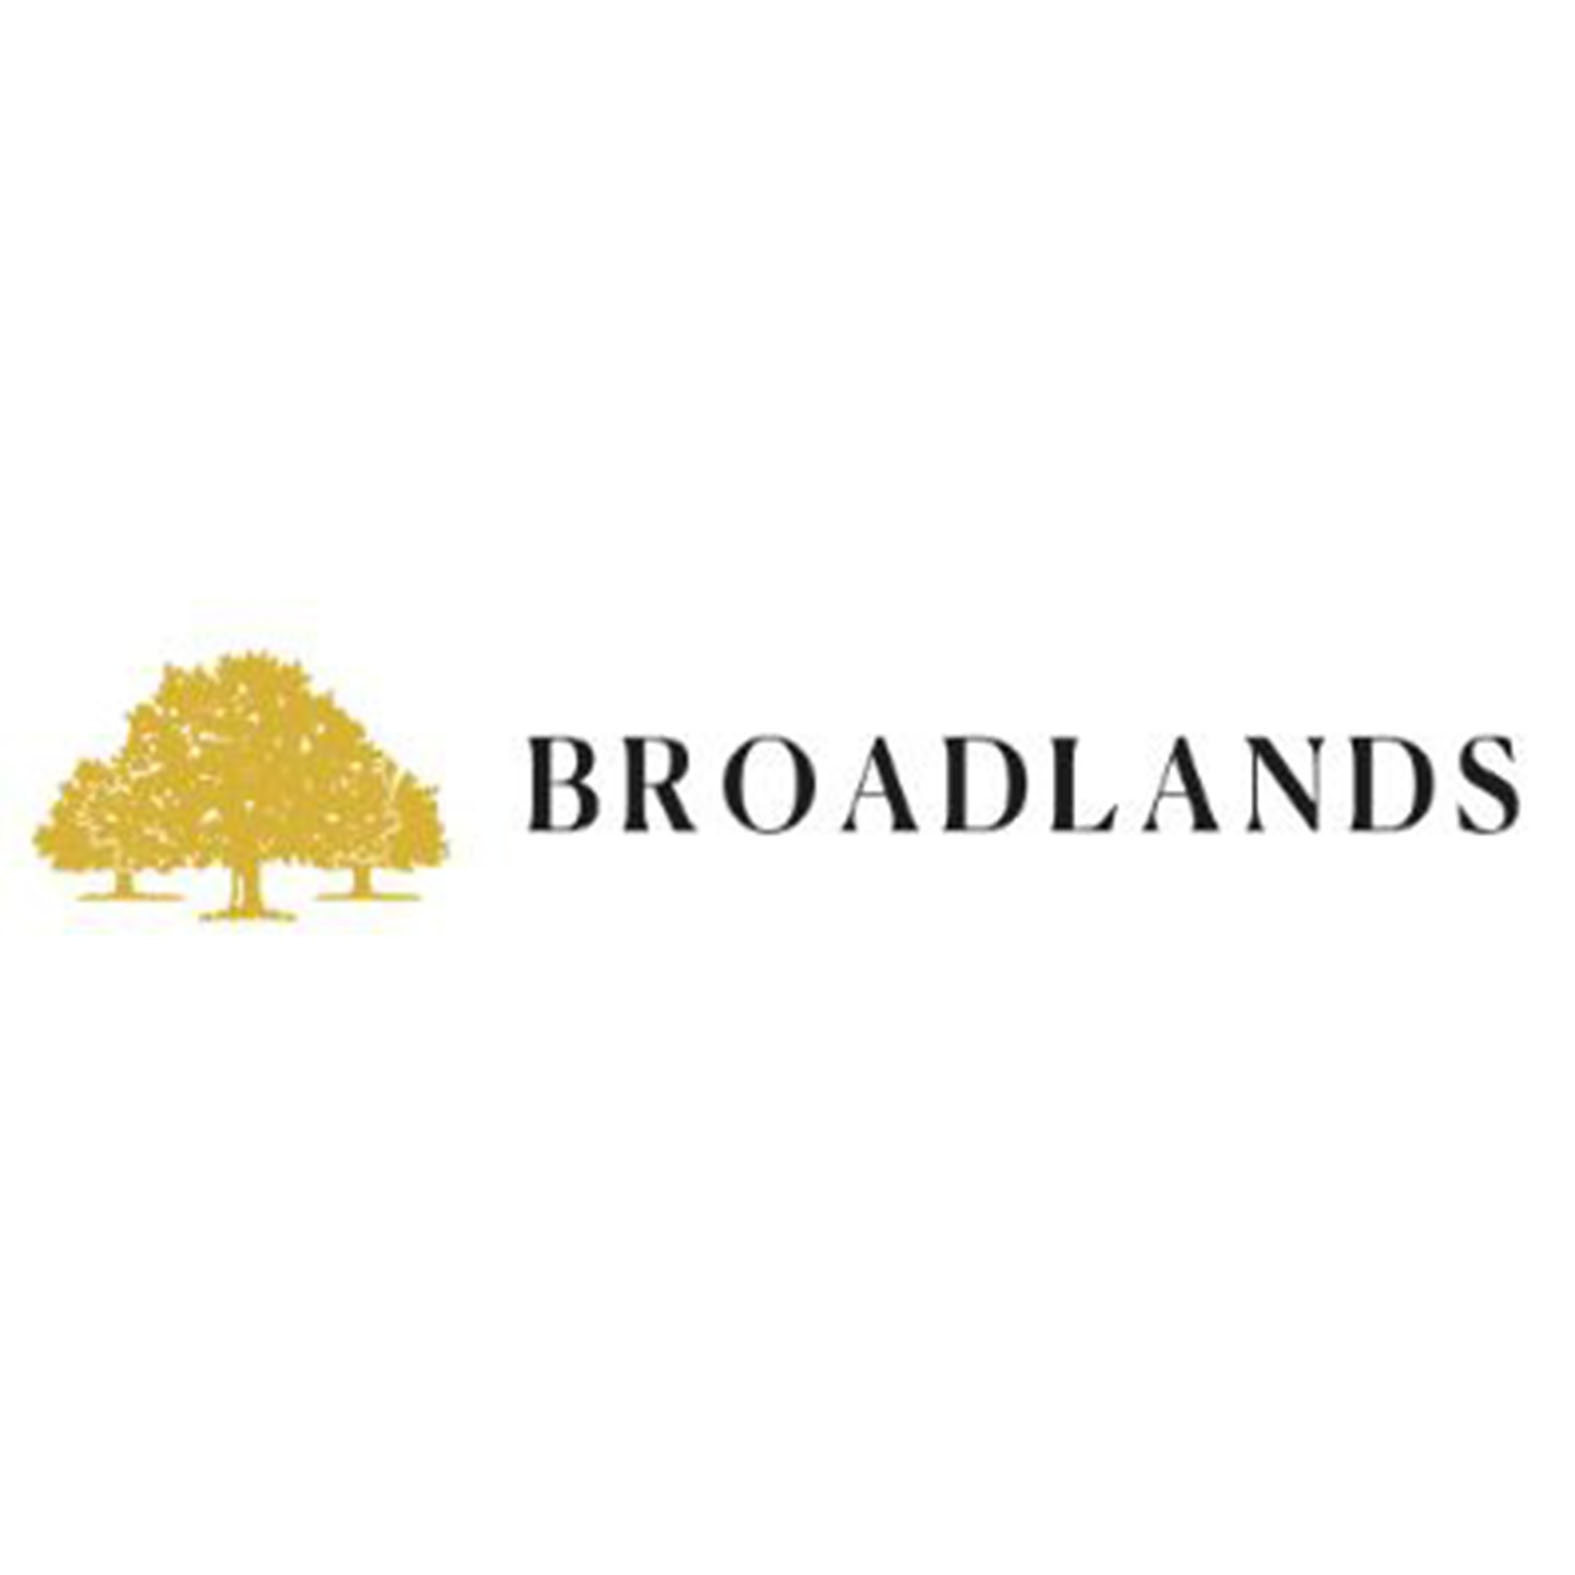 broadlands estate agents jersey